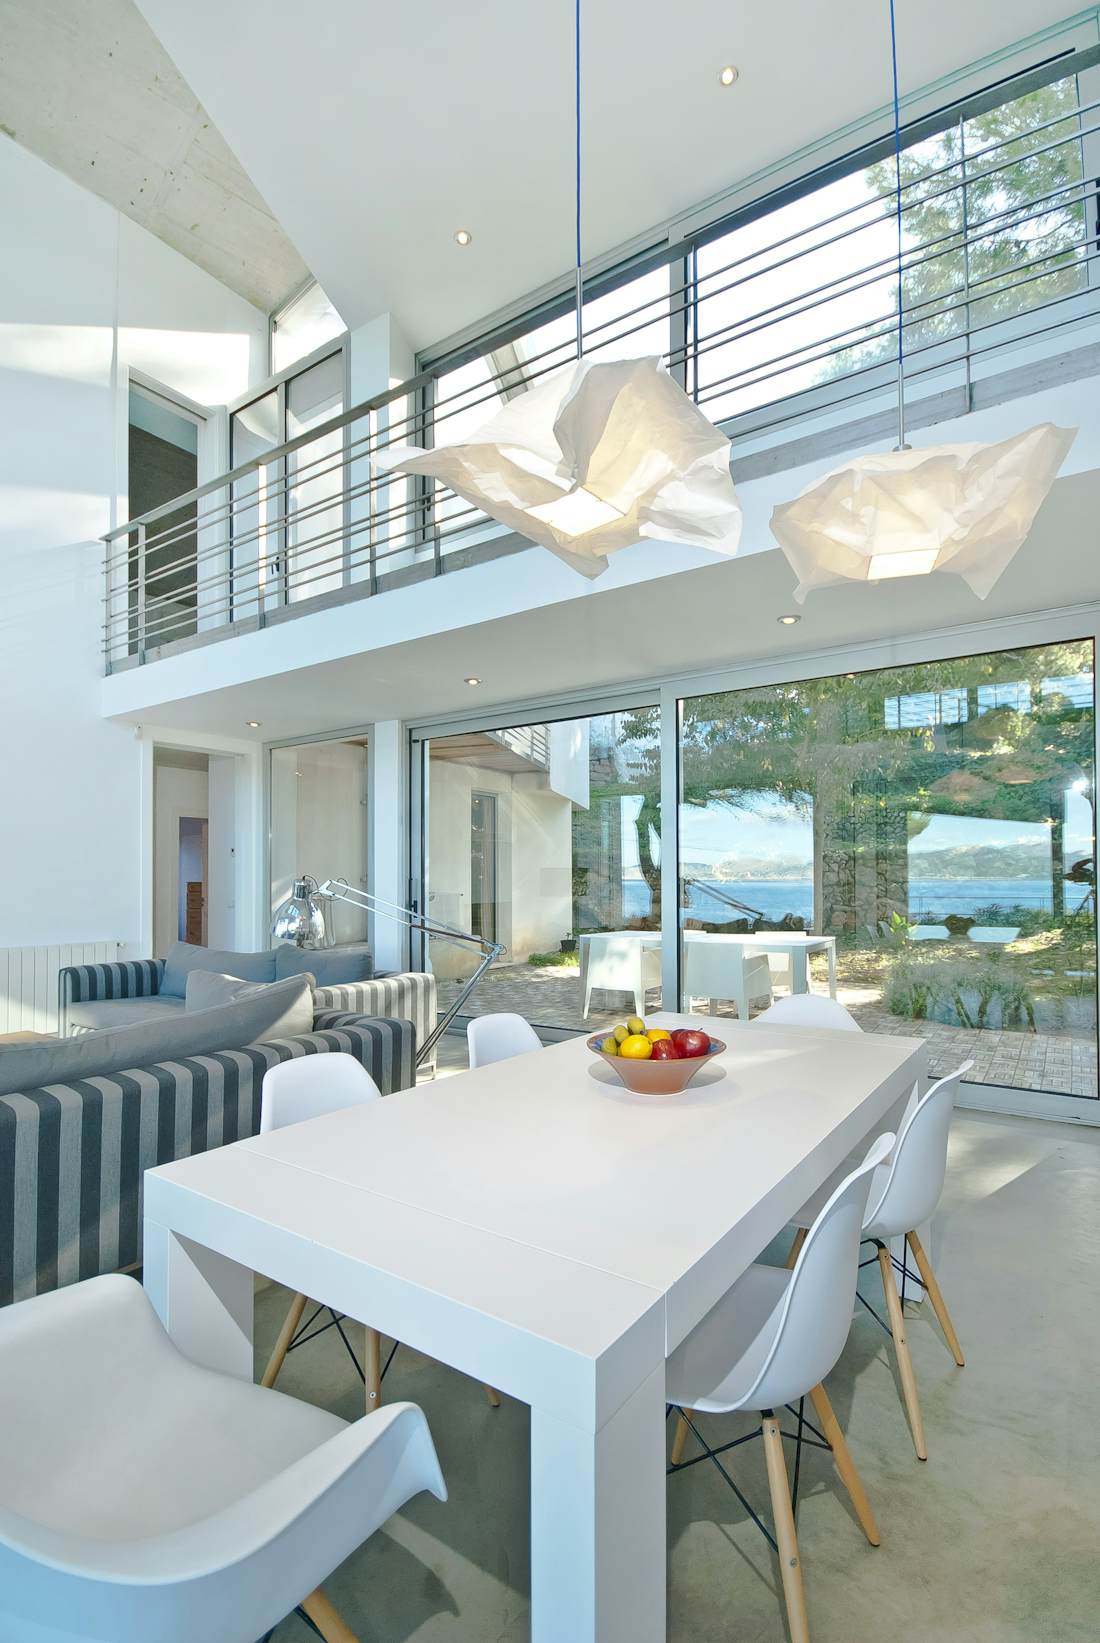 Mallorca alojamiento - Villa H20 - Beautiful open plan dining room at sea view villa H2O in Mallorca